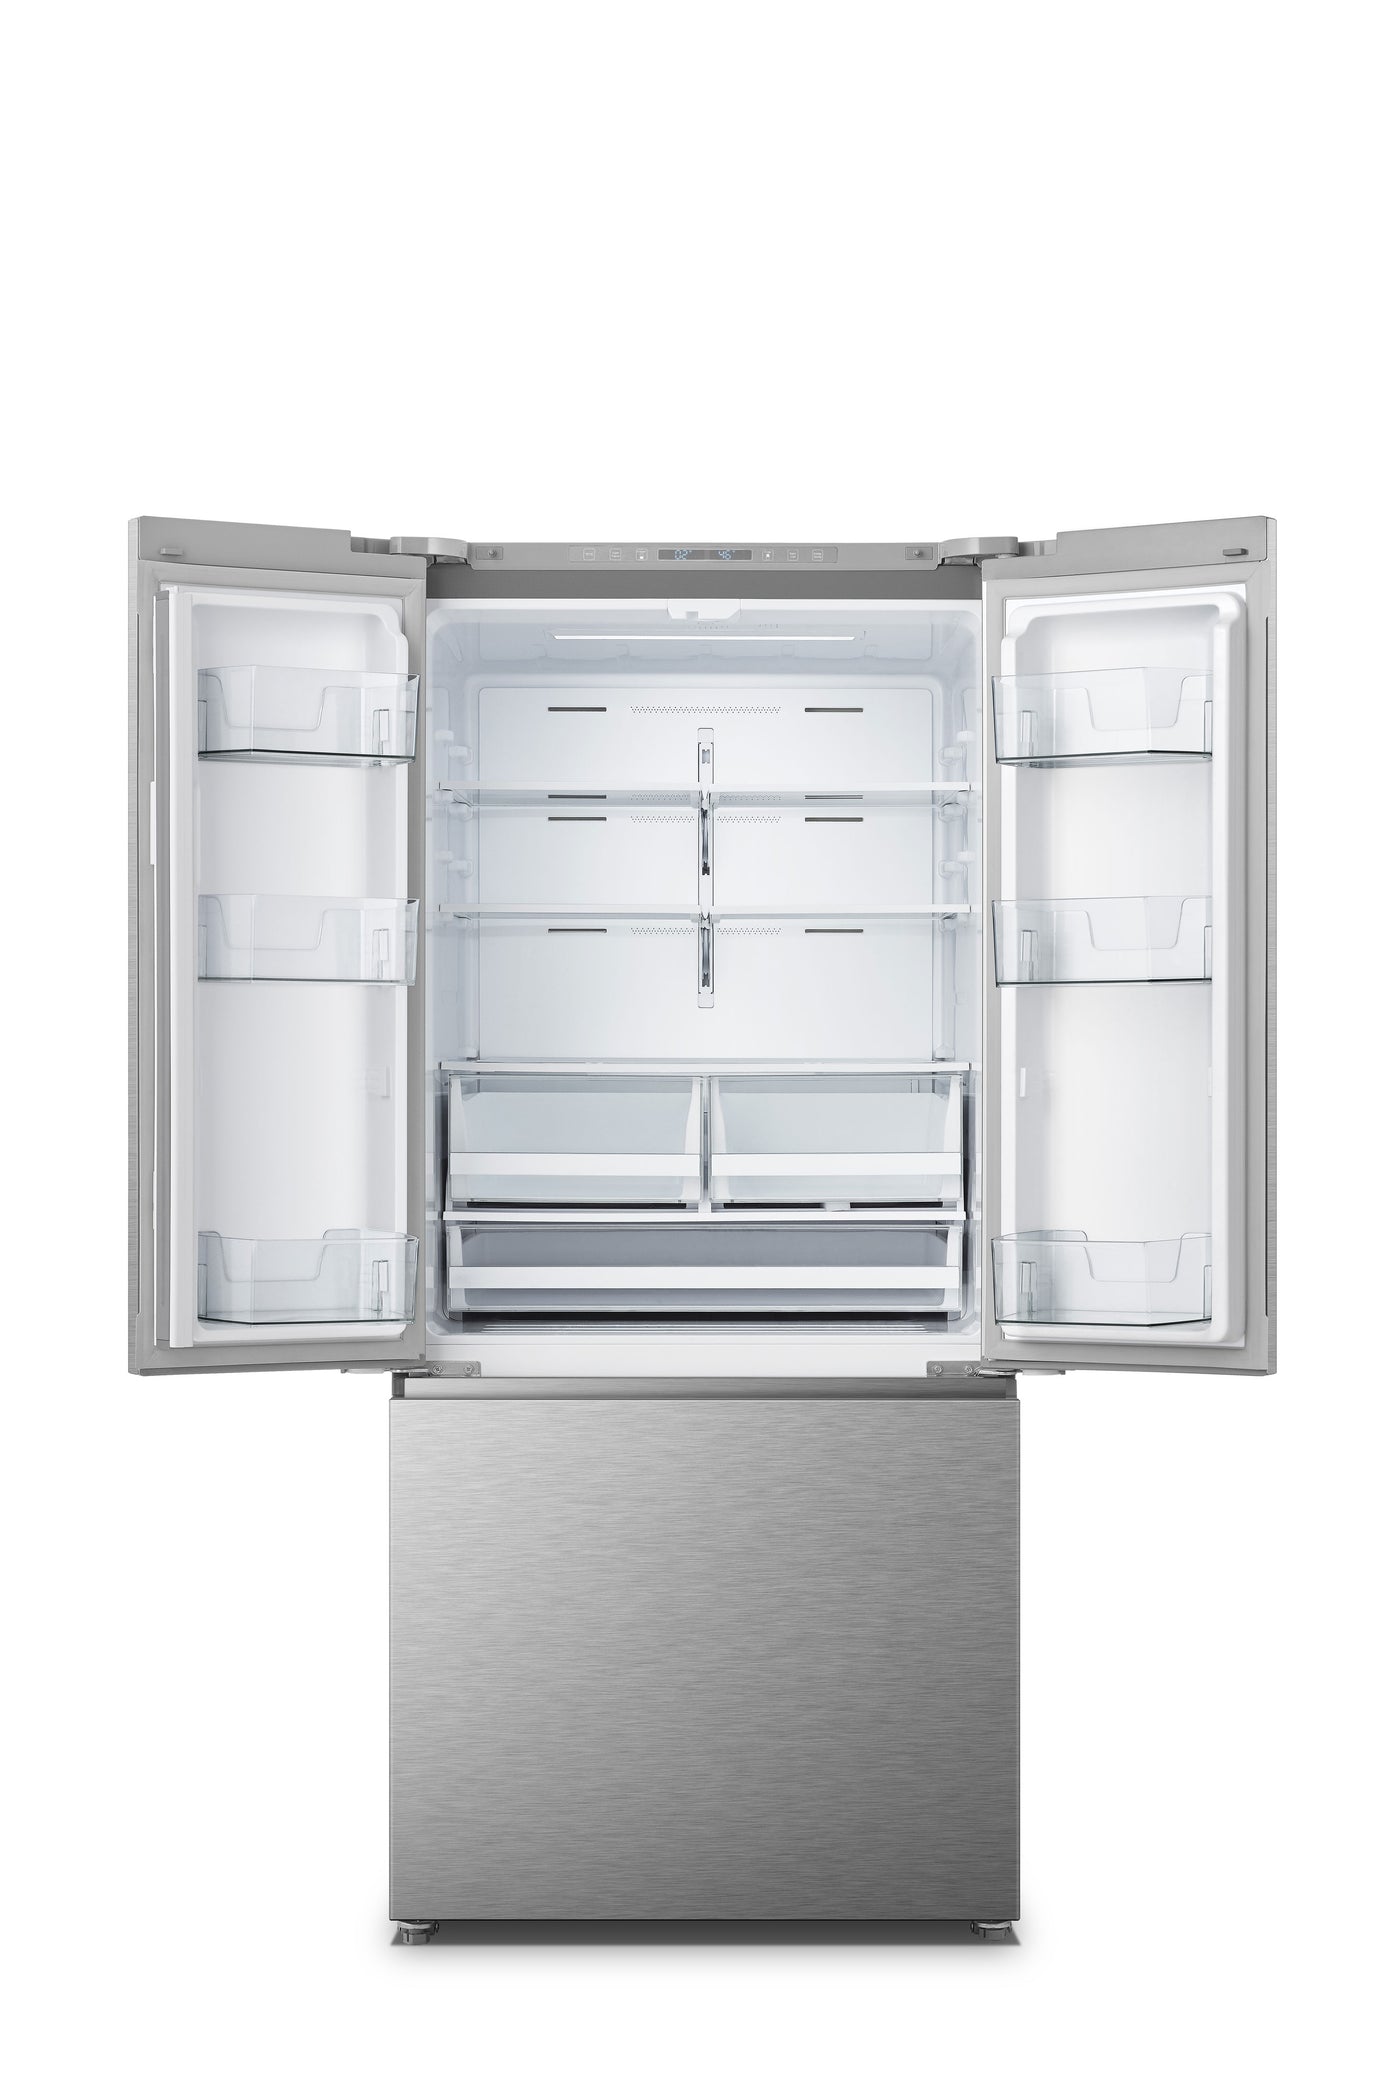 Hisense Stainless Steel French-Door Refrigerator (20.8 Cu. Ft.) - RF210N6ASE